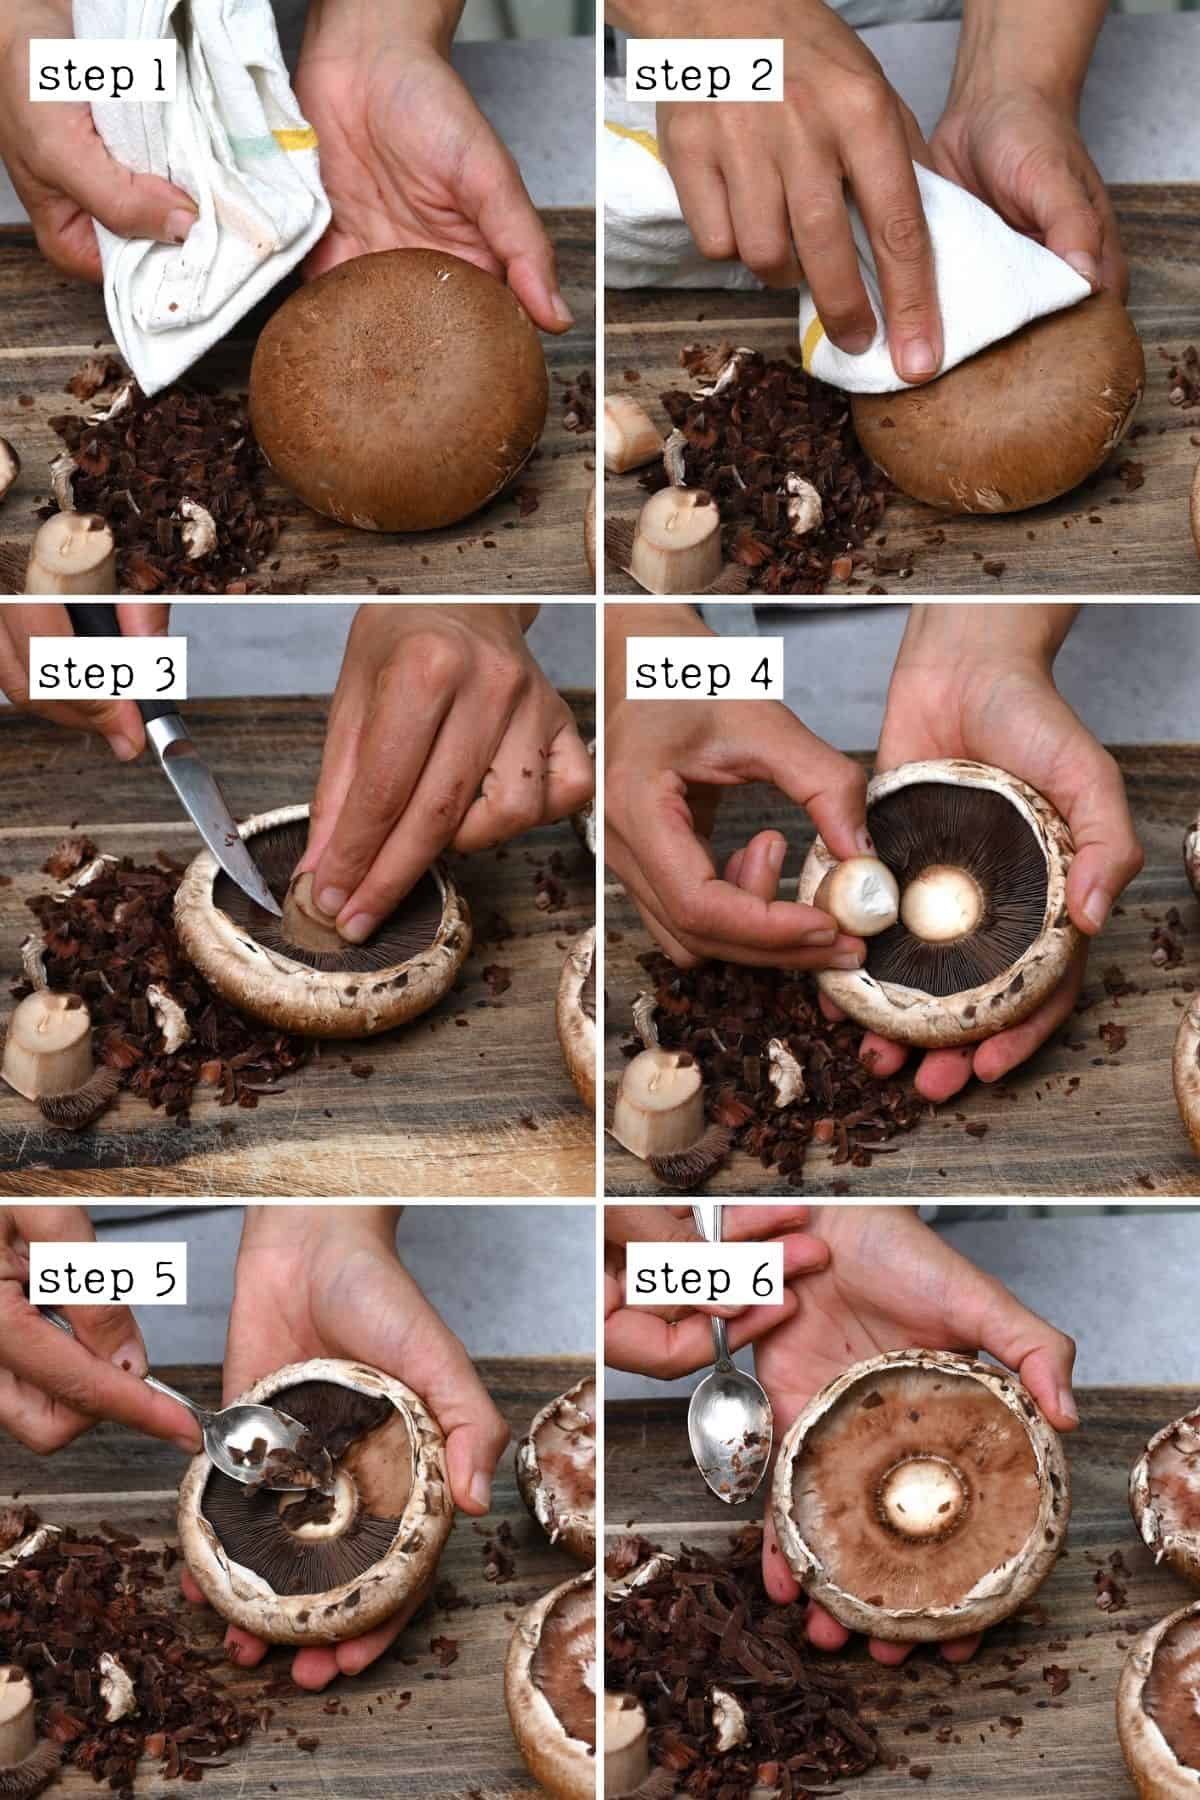 Steps for preparing portobello mushrooms for grilling